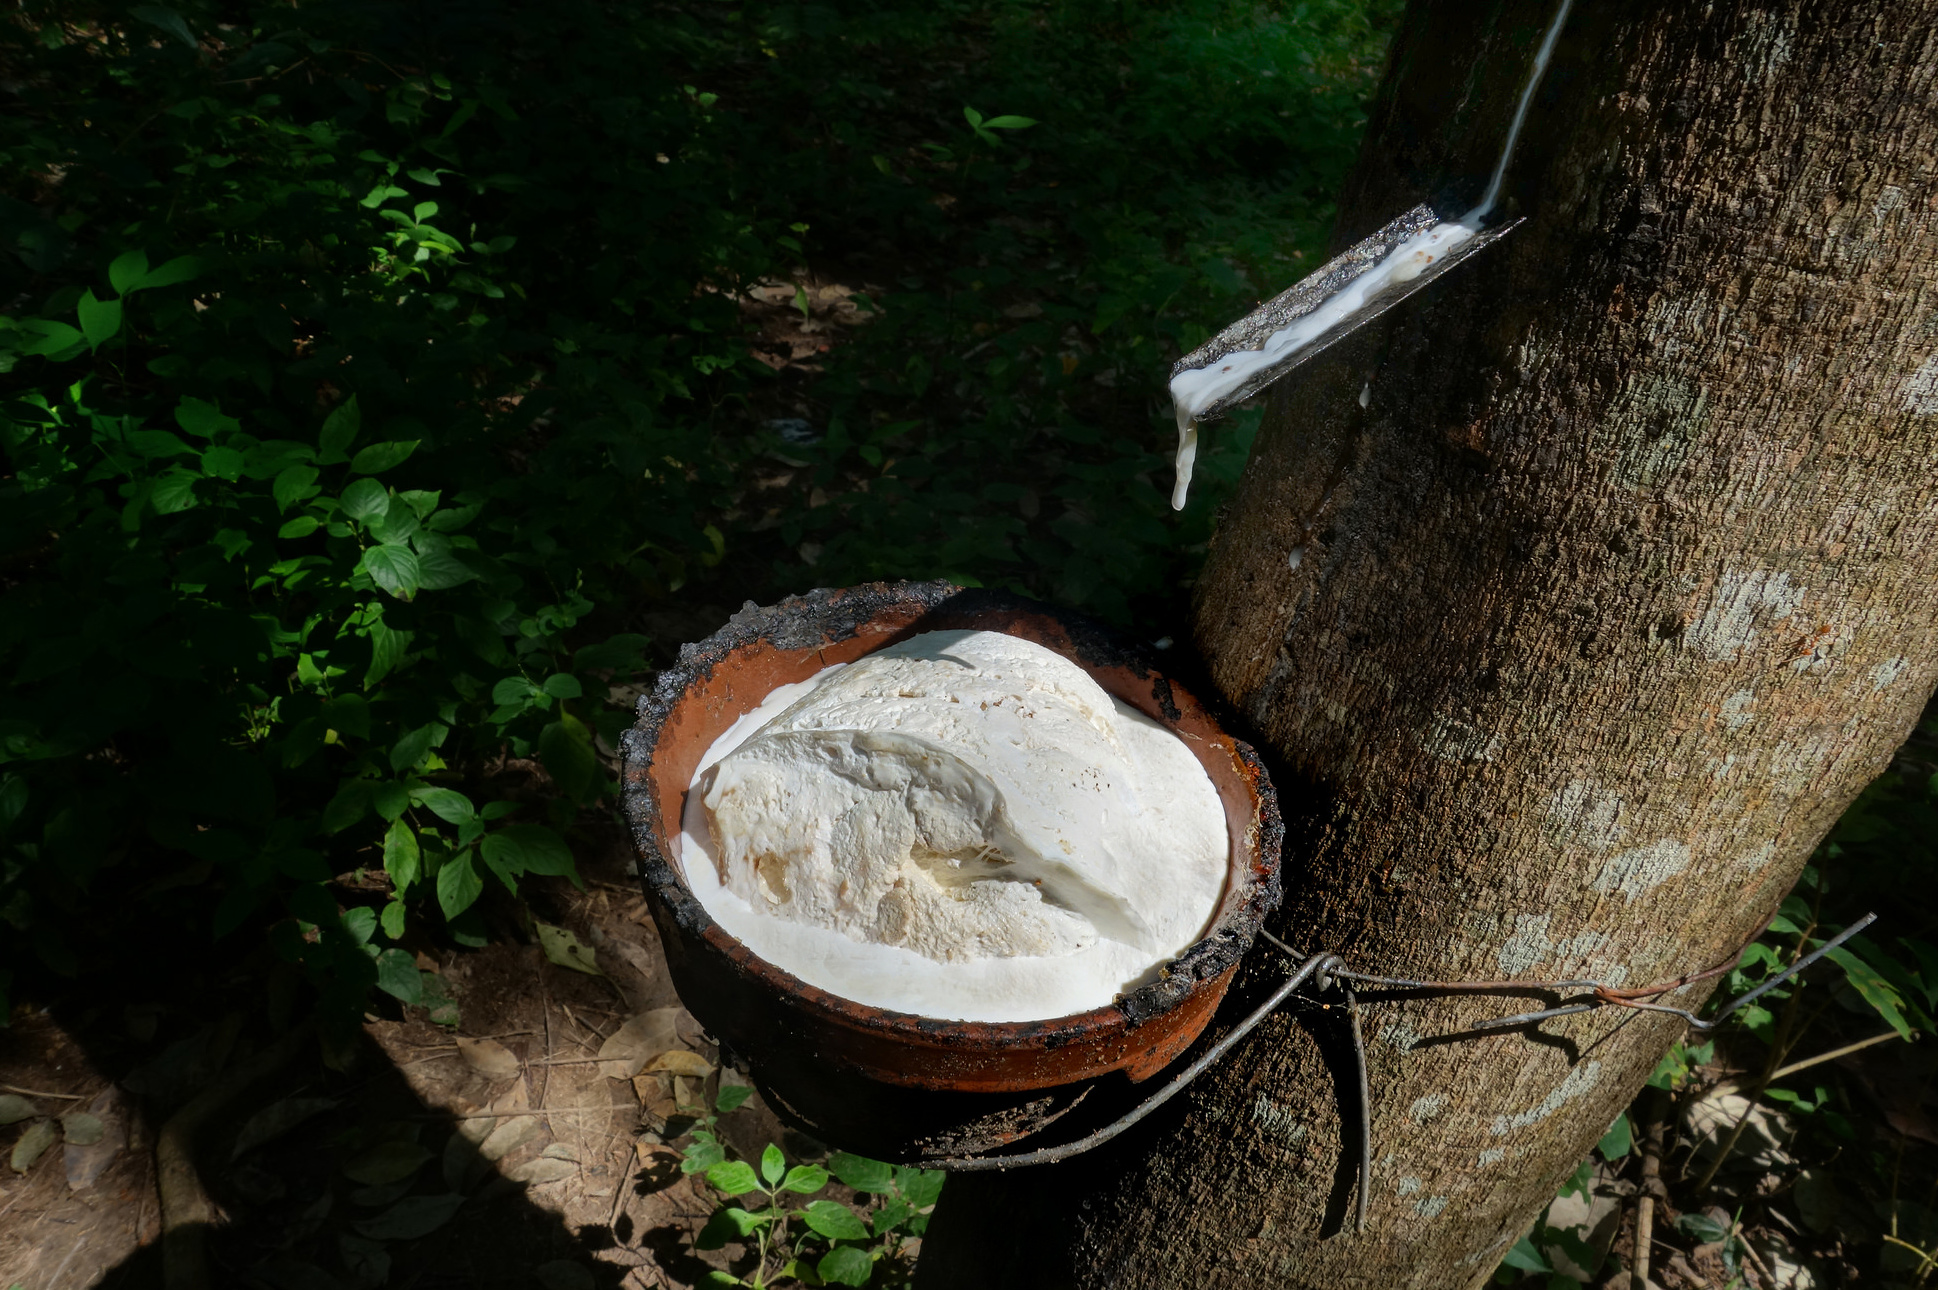 Le caoutchouc, issu de la sève de l’hévéa, est une espèce chimique naturelle. © Urs Achermann, Flickr, CC by-nc 2.0